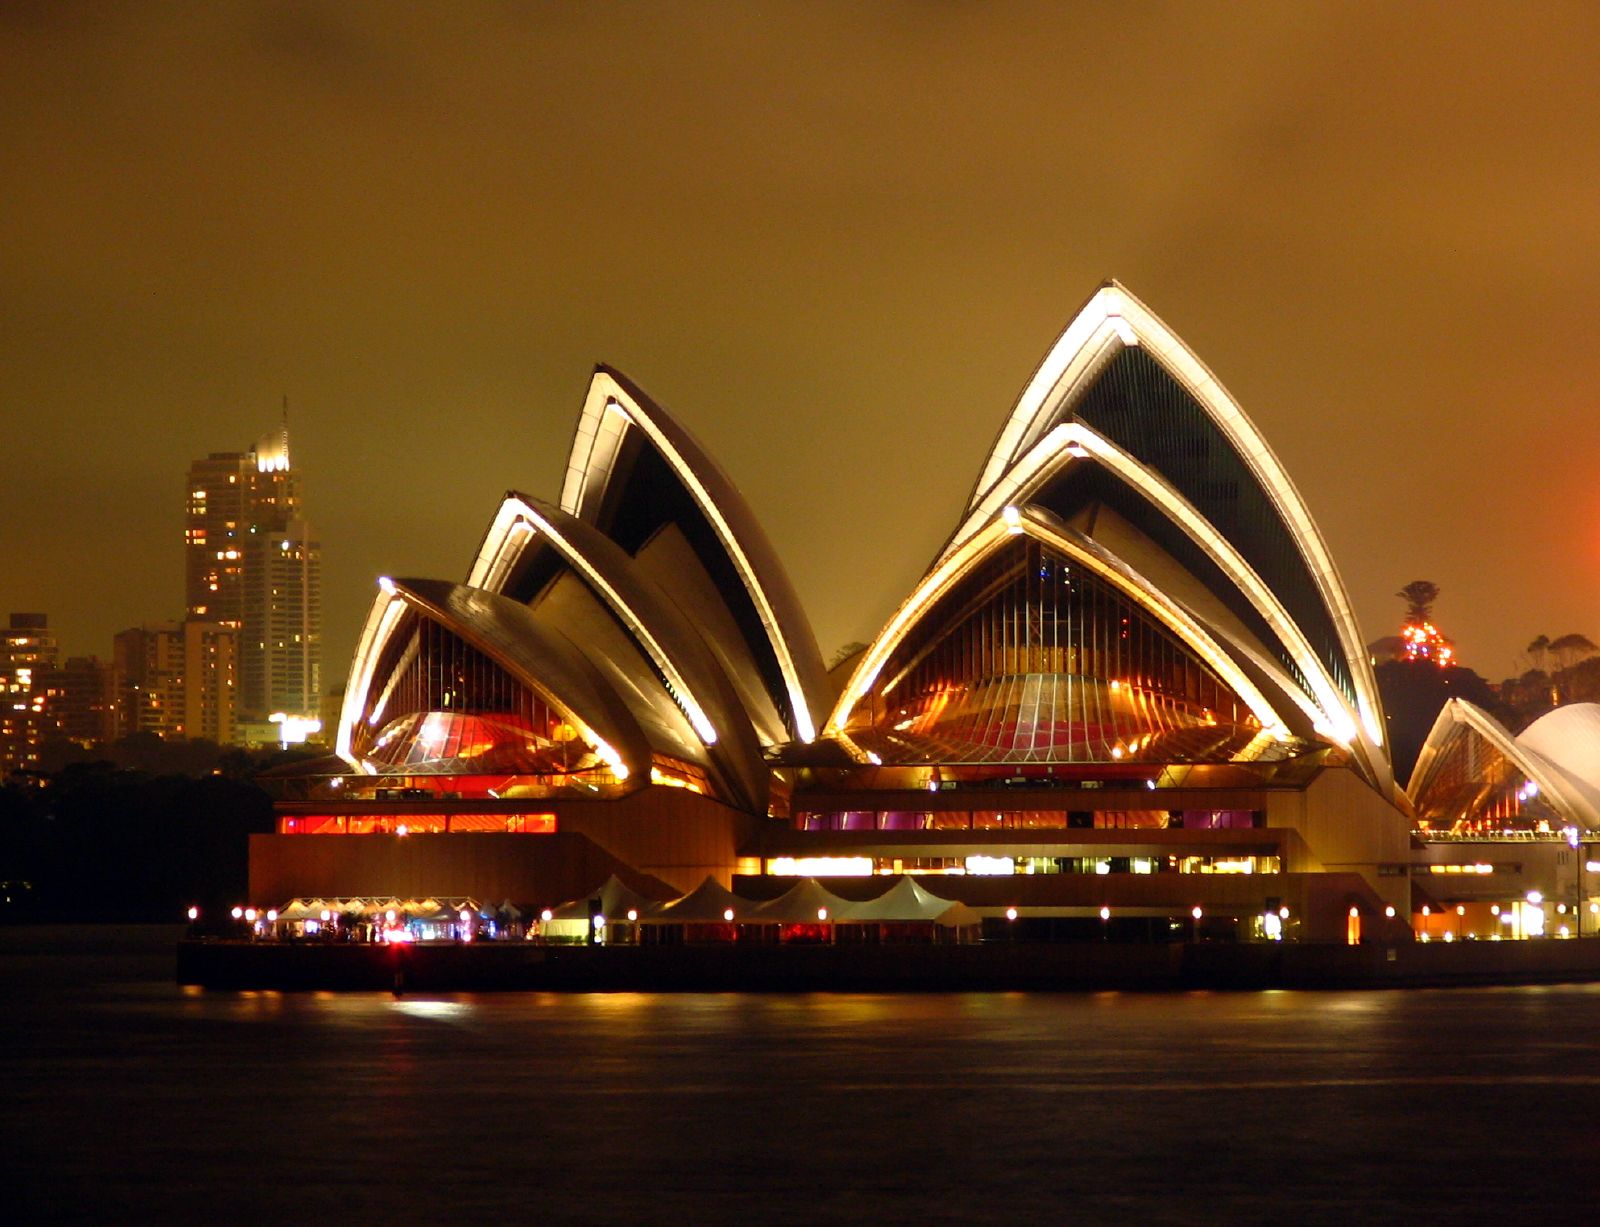 Chudesa. Чудо света Сиднейский оперный театр. Сидней Гранд опера. Чудеса света Сидней. Театр в г. Сиднее (Австралия).